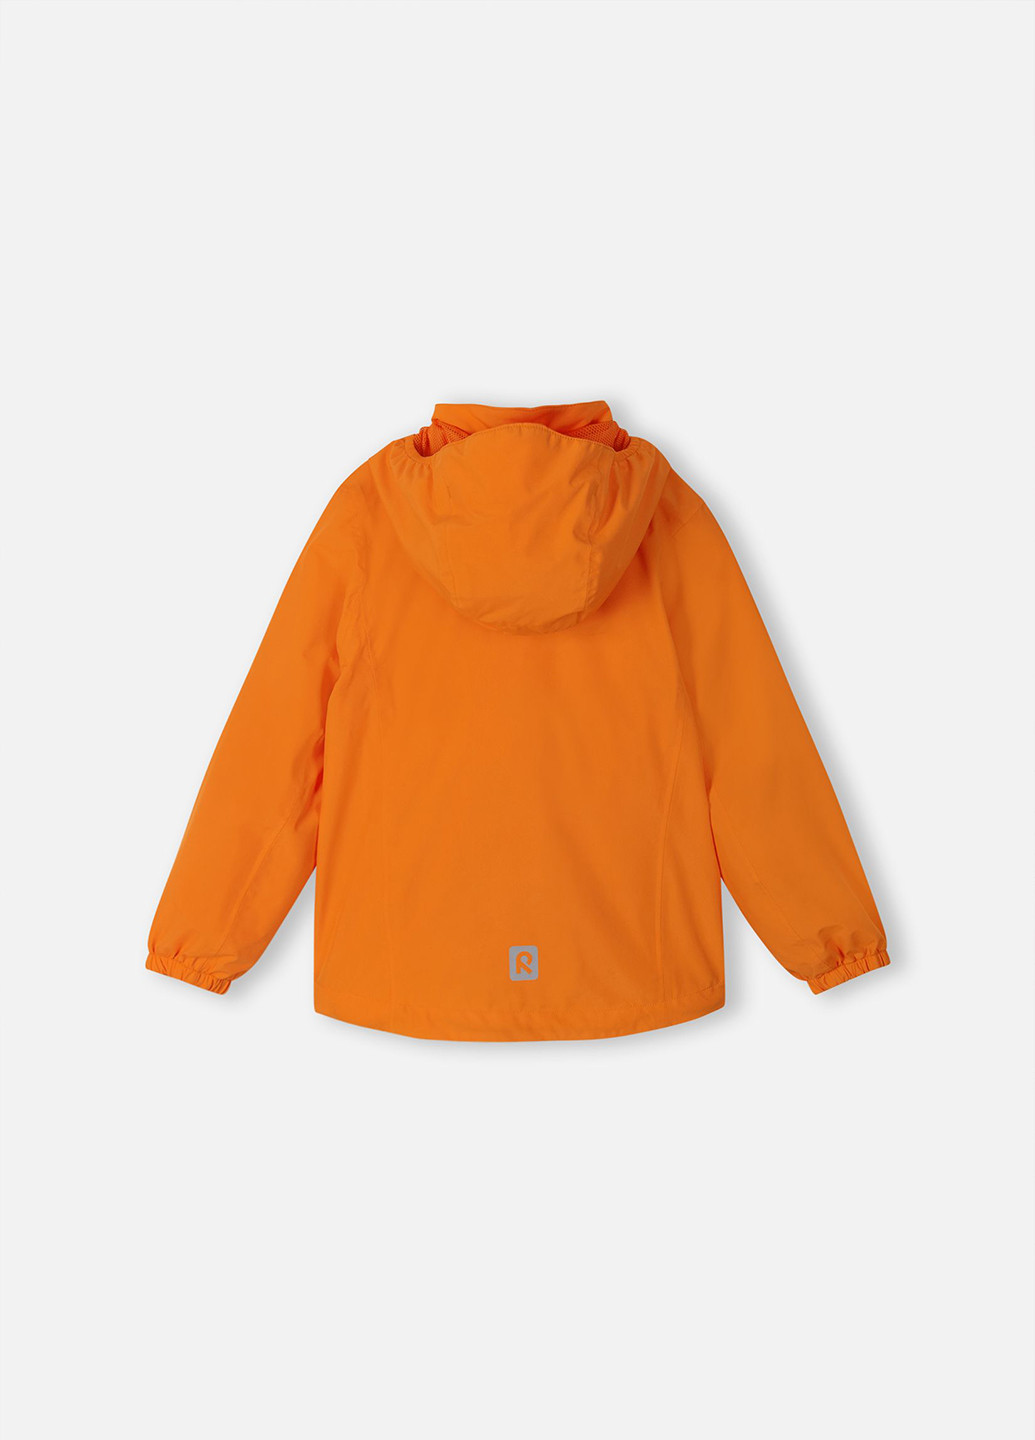 Оранжевая демисезонная куртка облегчённая Reima Mist